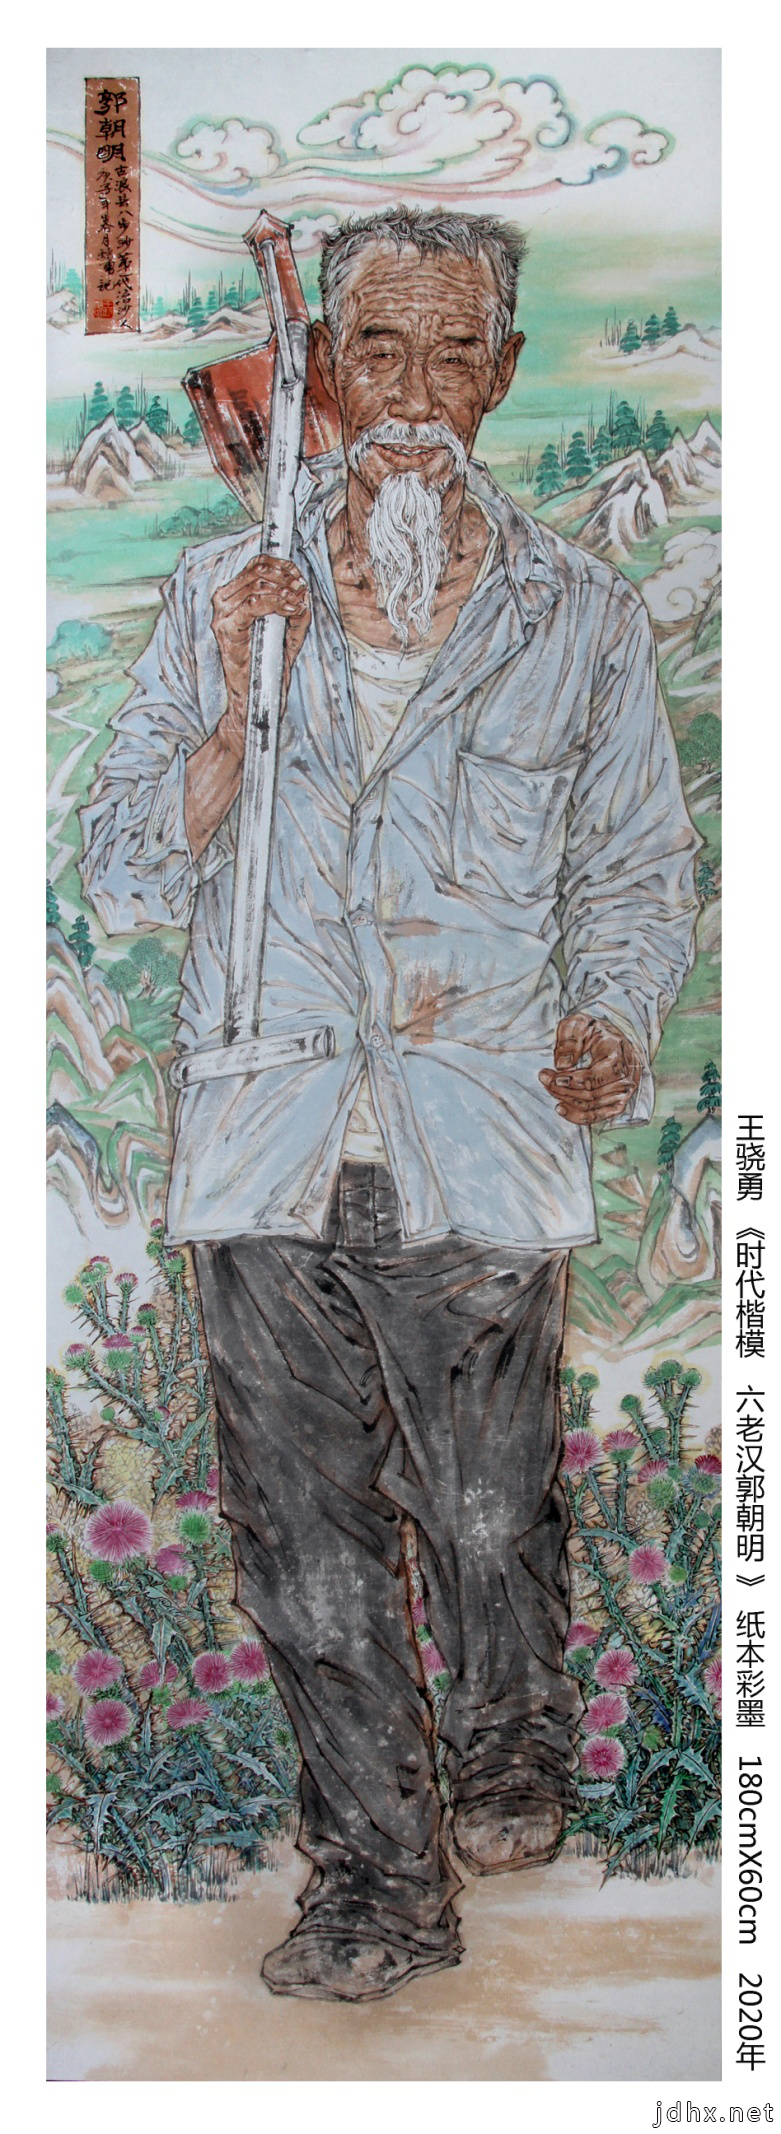 甘肃省美术家协会驻会副主席王骁勇巨幅中国画《时代楷模 八步沙六老汉》创作完成